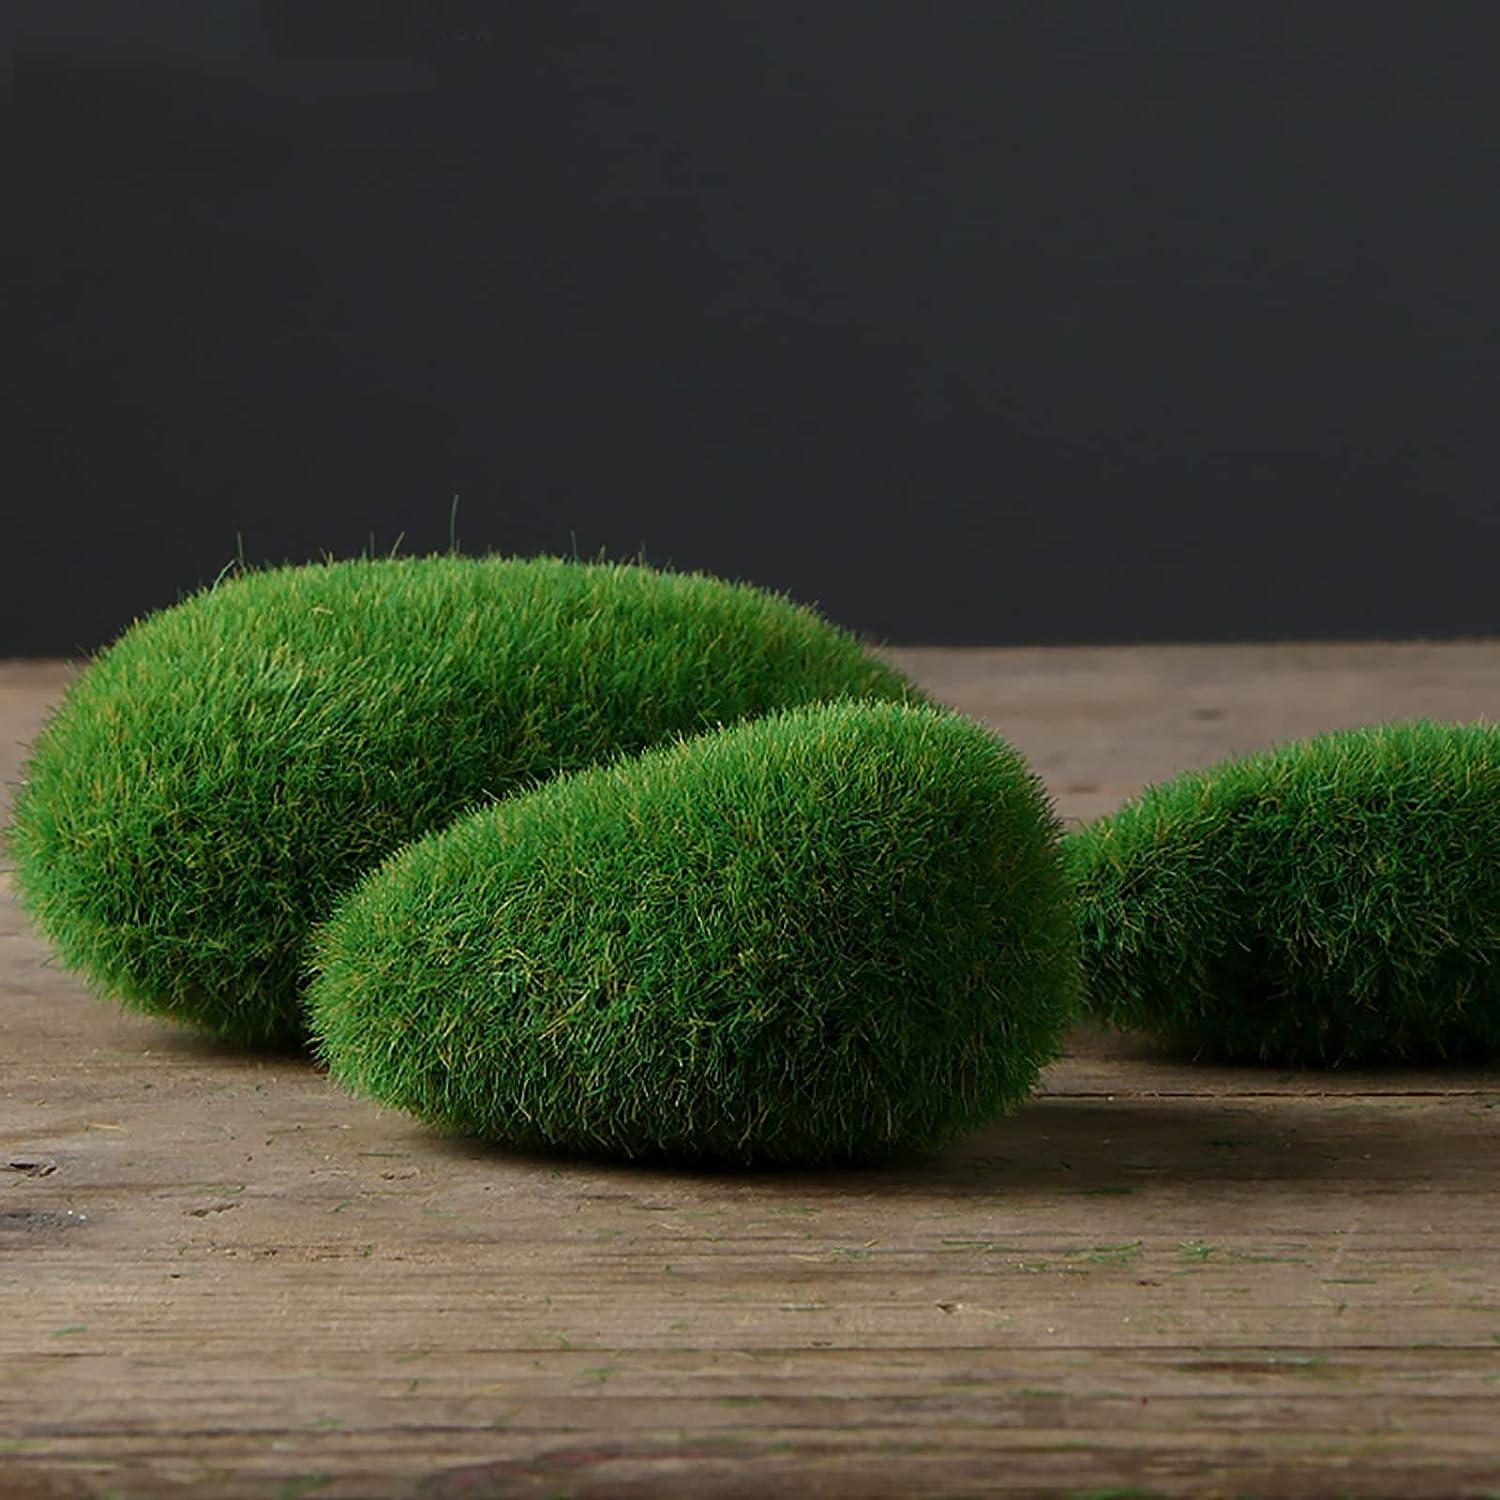 DUENEW 40PCS Artificial Moss Rocks Decorative Moss Balls Green